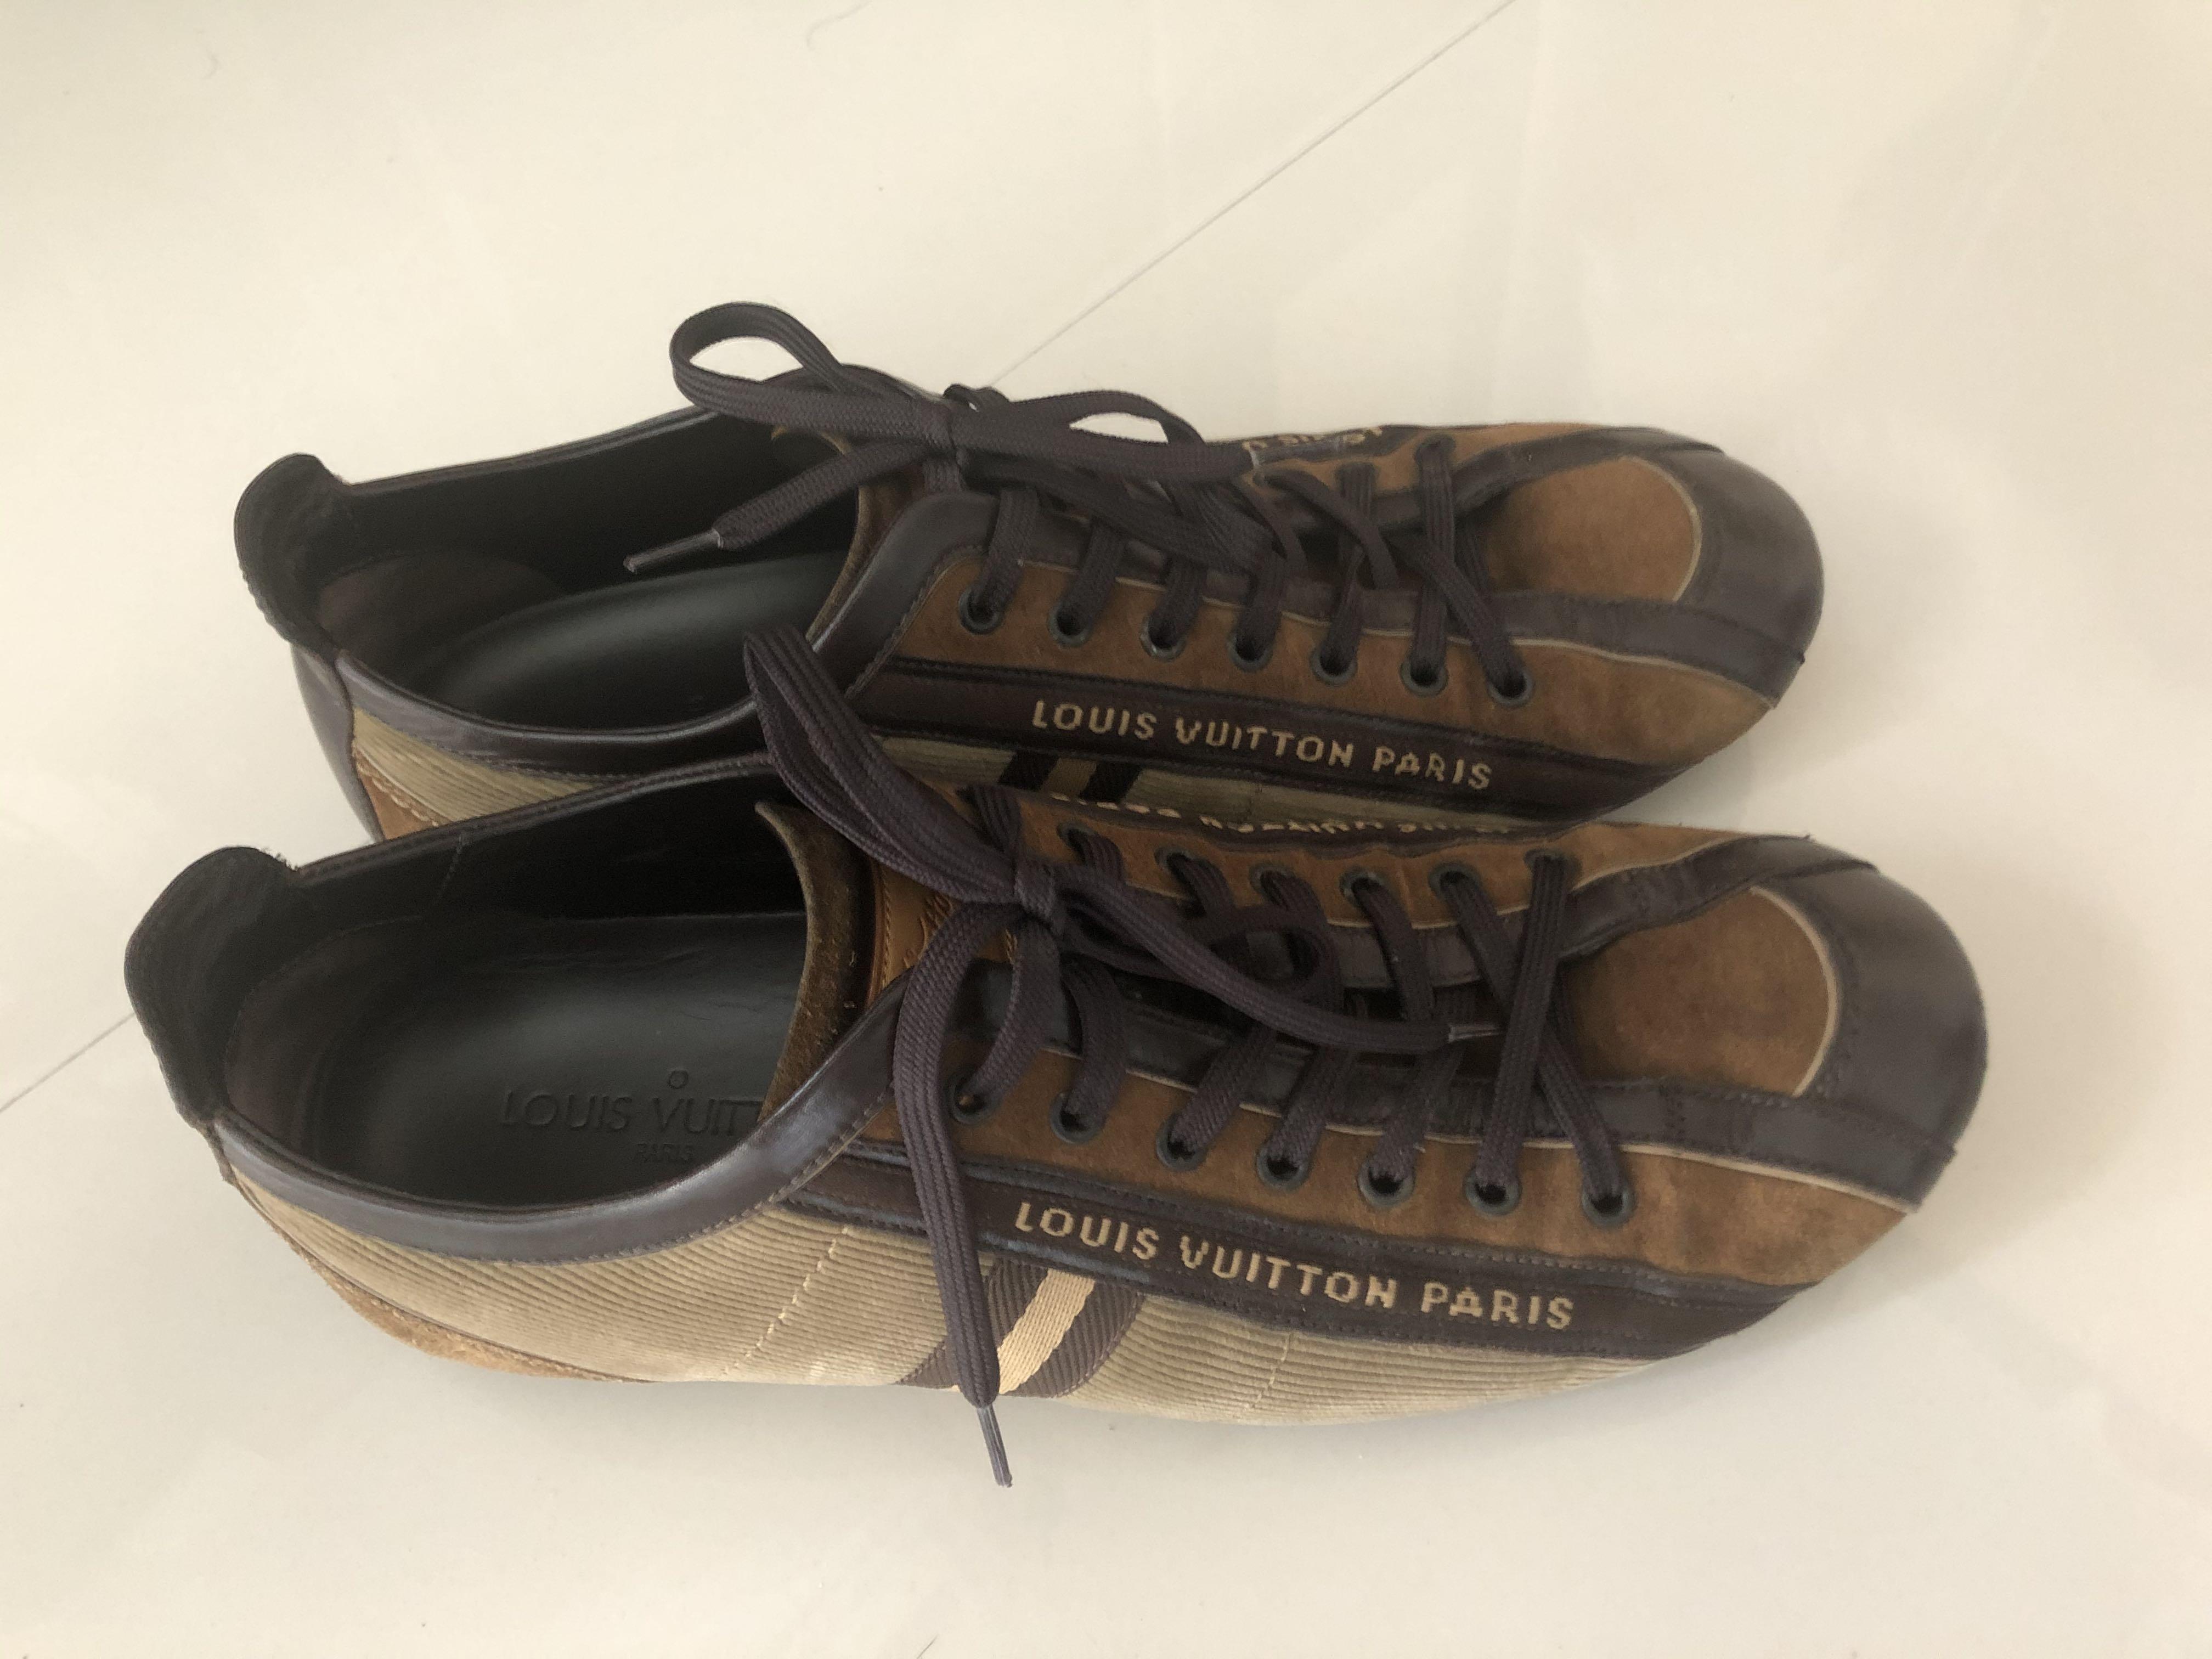 Louis Vuitton, Shoes, White Louis Vuitton Sneakers Size 38 Us 8